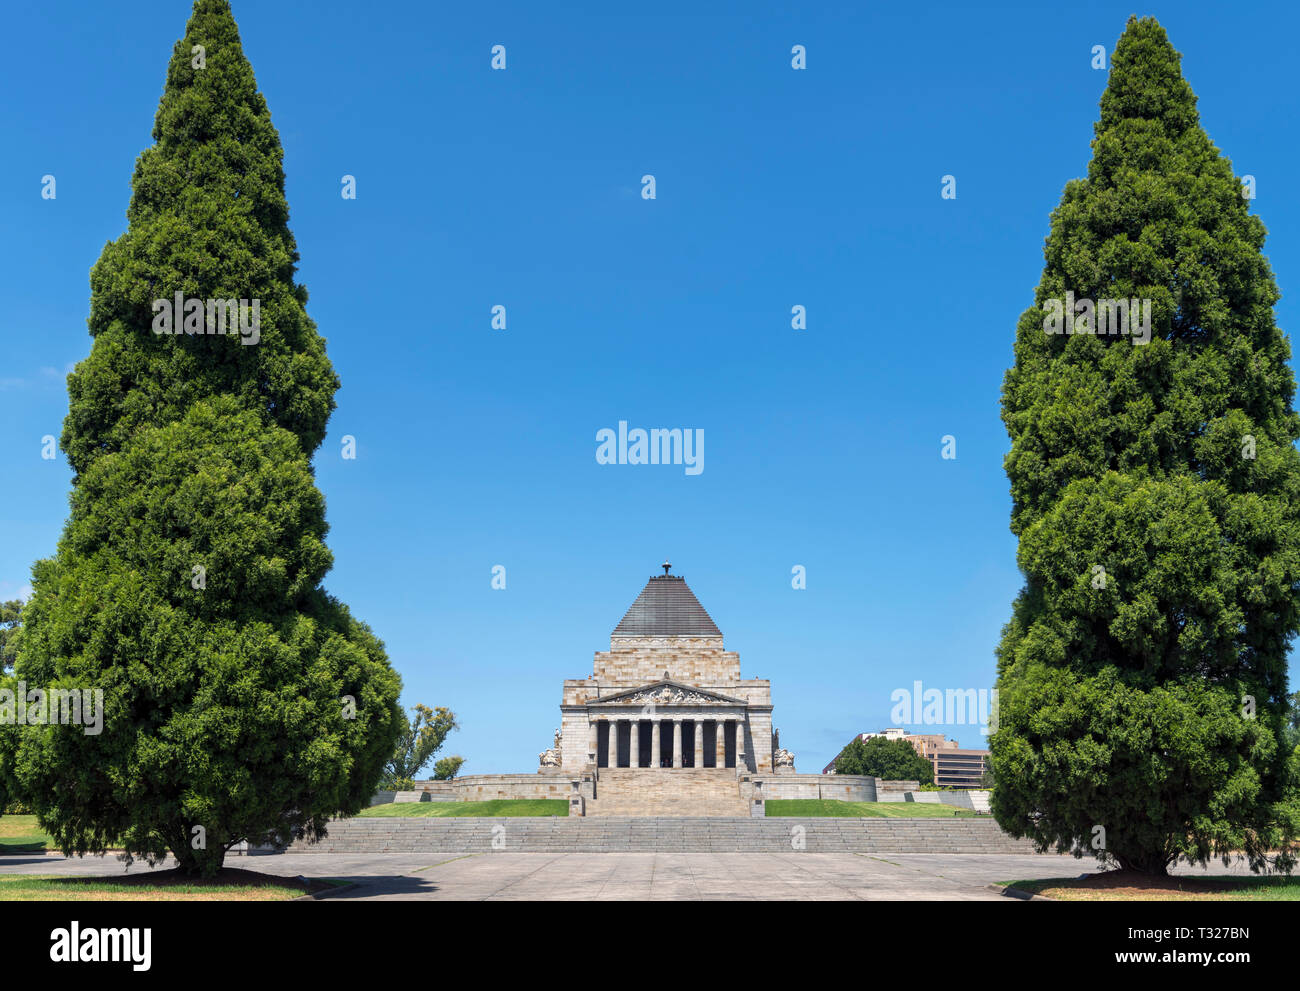 Le culte du souvenir, un mémorial de guerre dans la région de Kings Domain, Melbourne, Victoria, Australie Banque D'Images